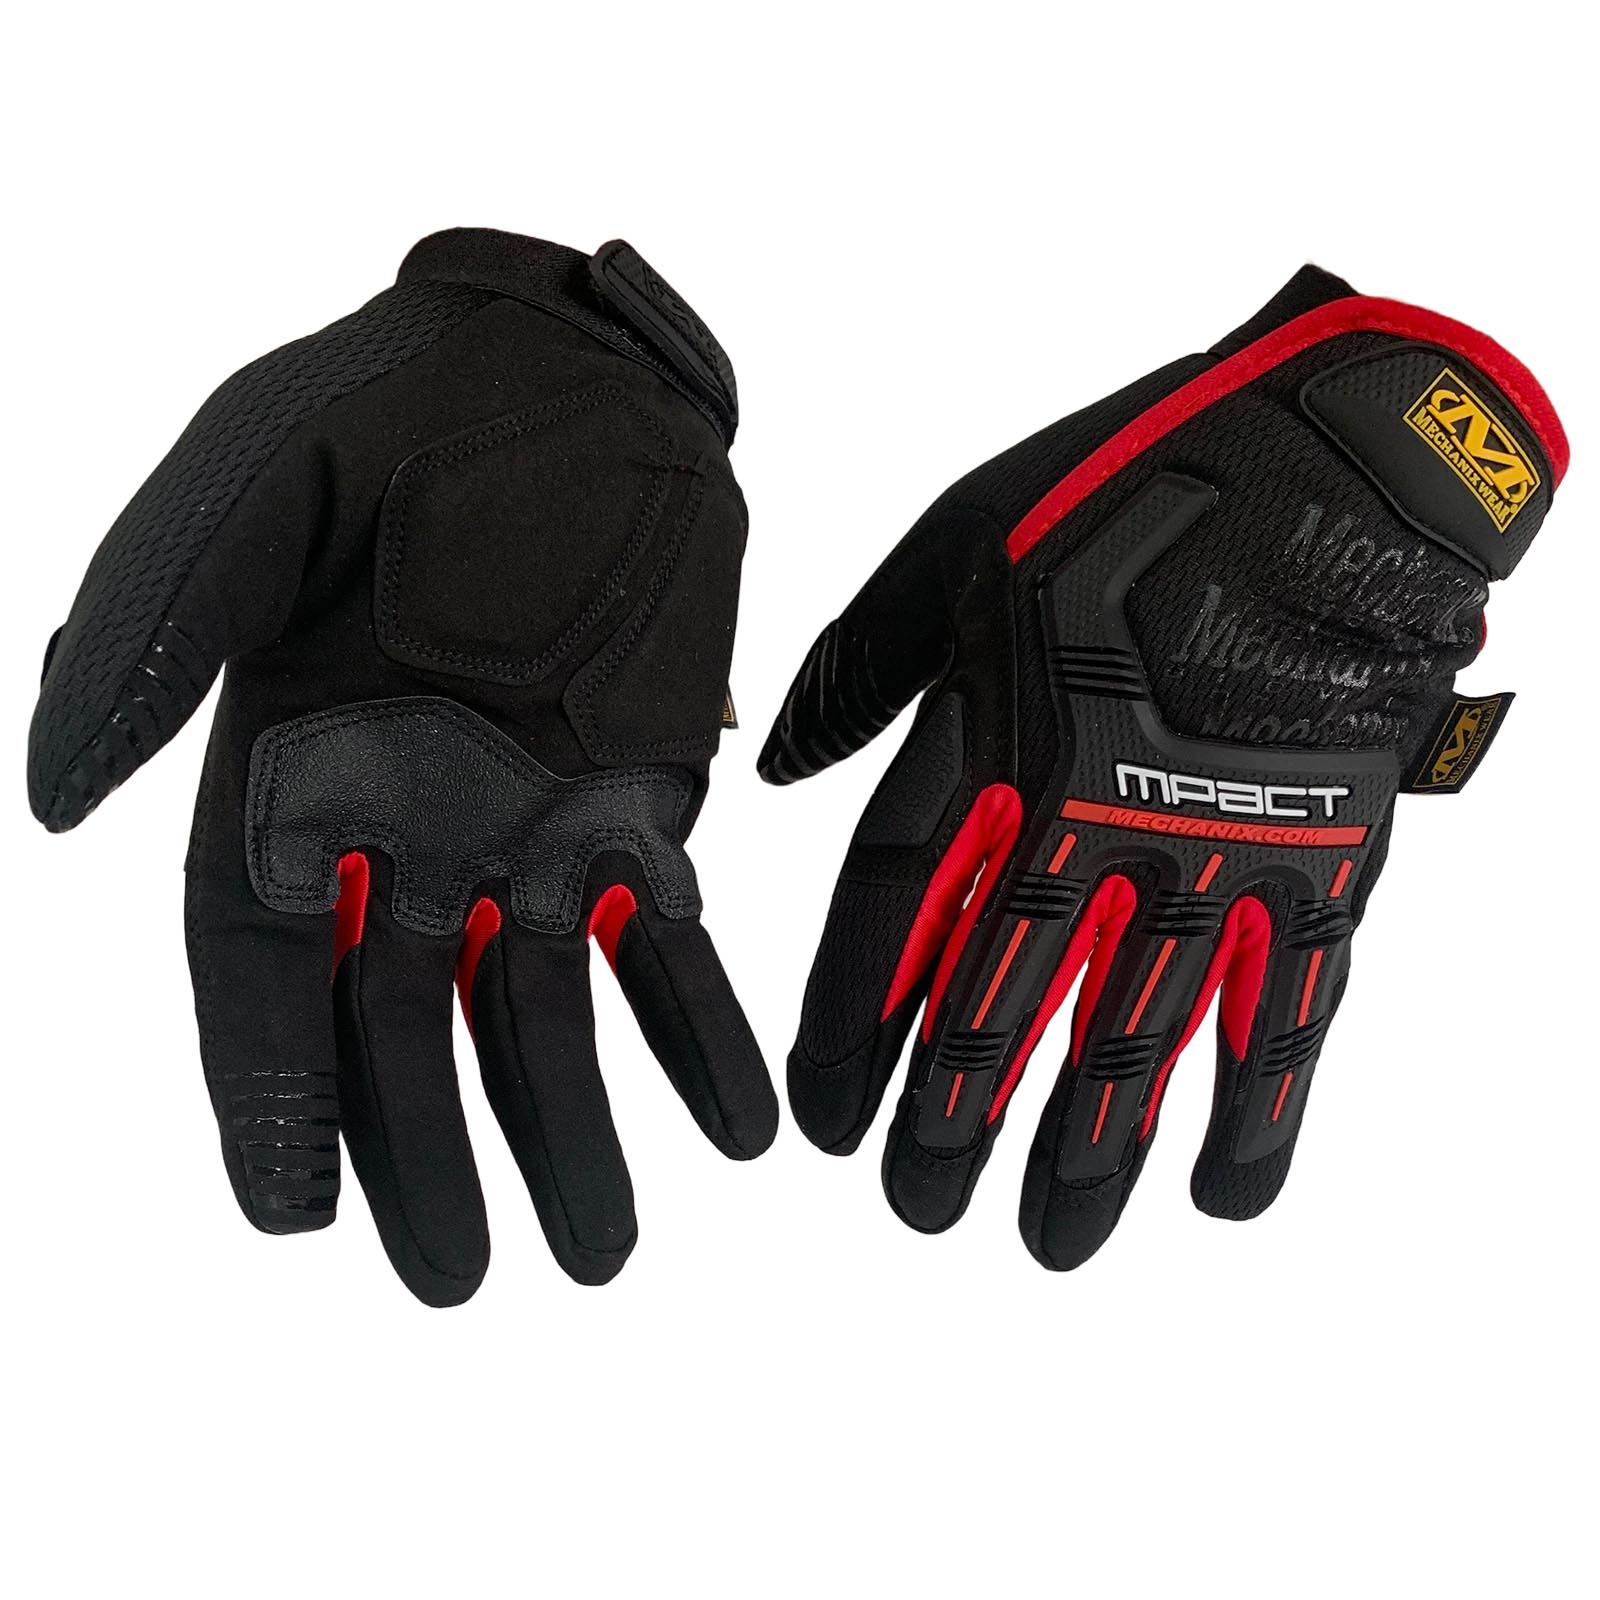 Крутые черные перчатки Mechanix MPact по лучшей цене